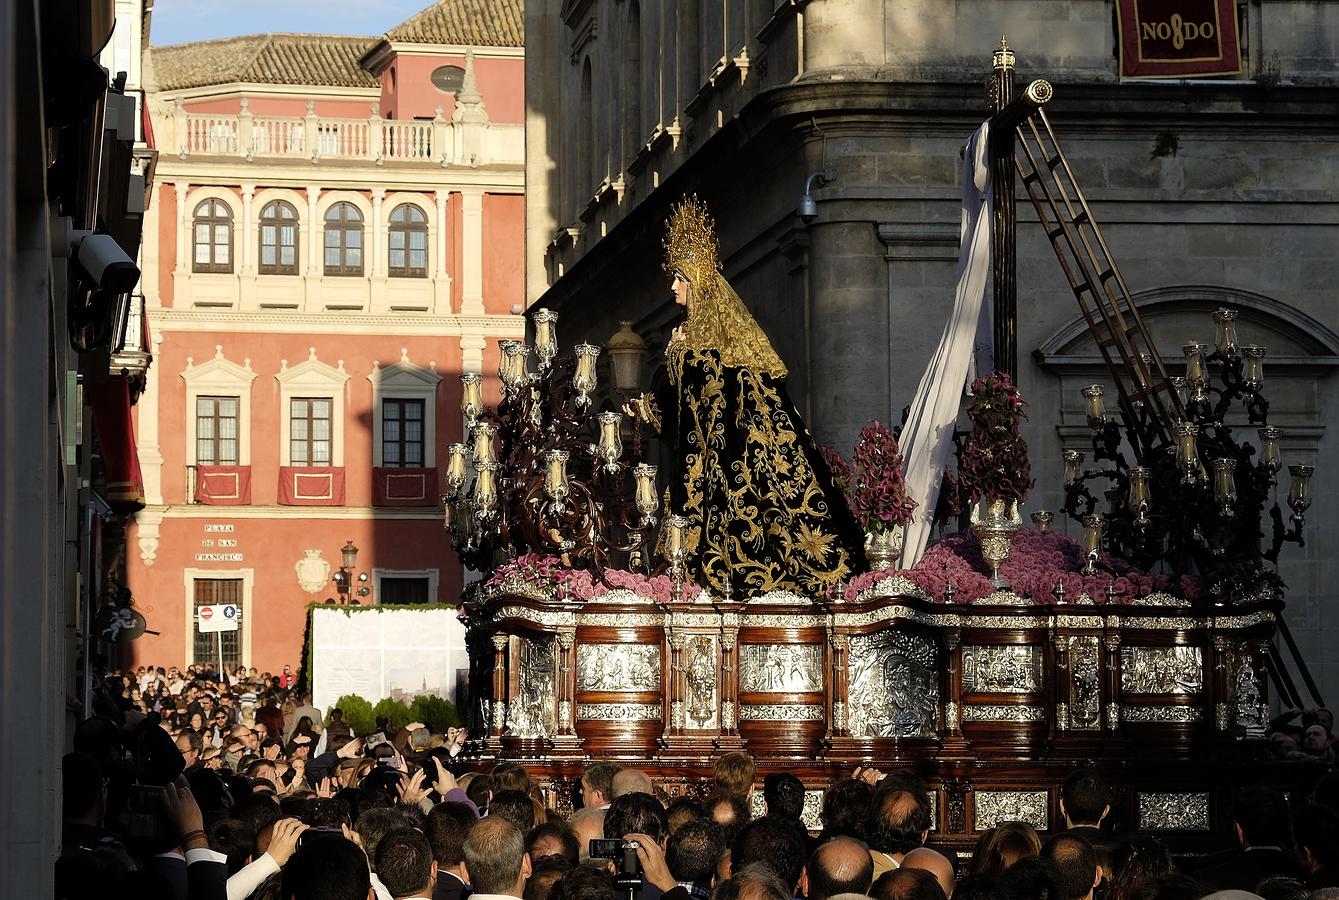 Procesión de Semana Santa en Sevilla